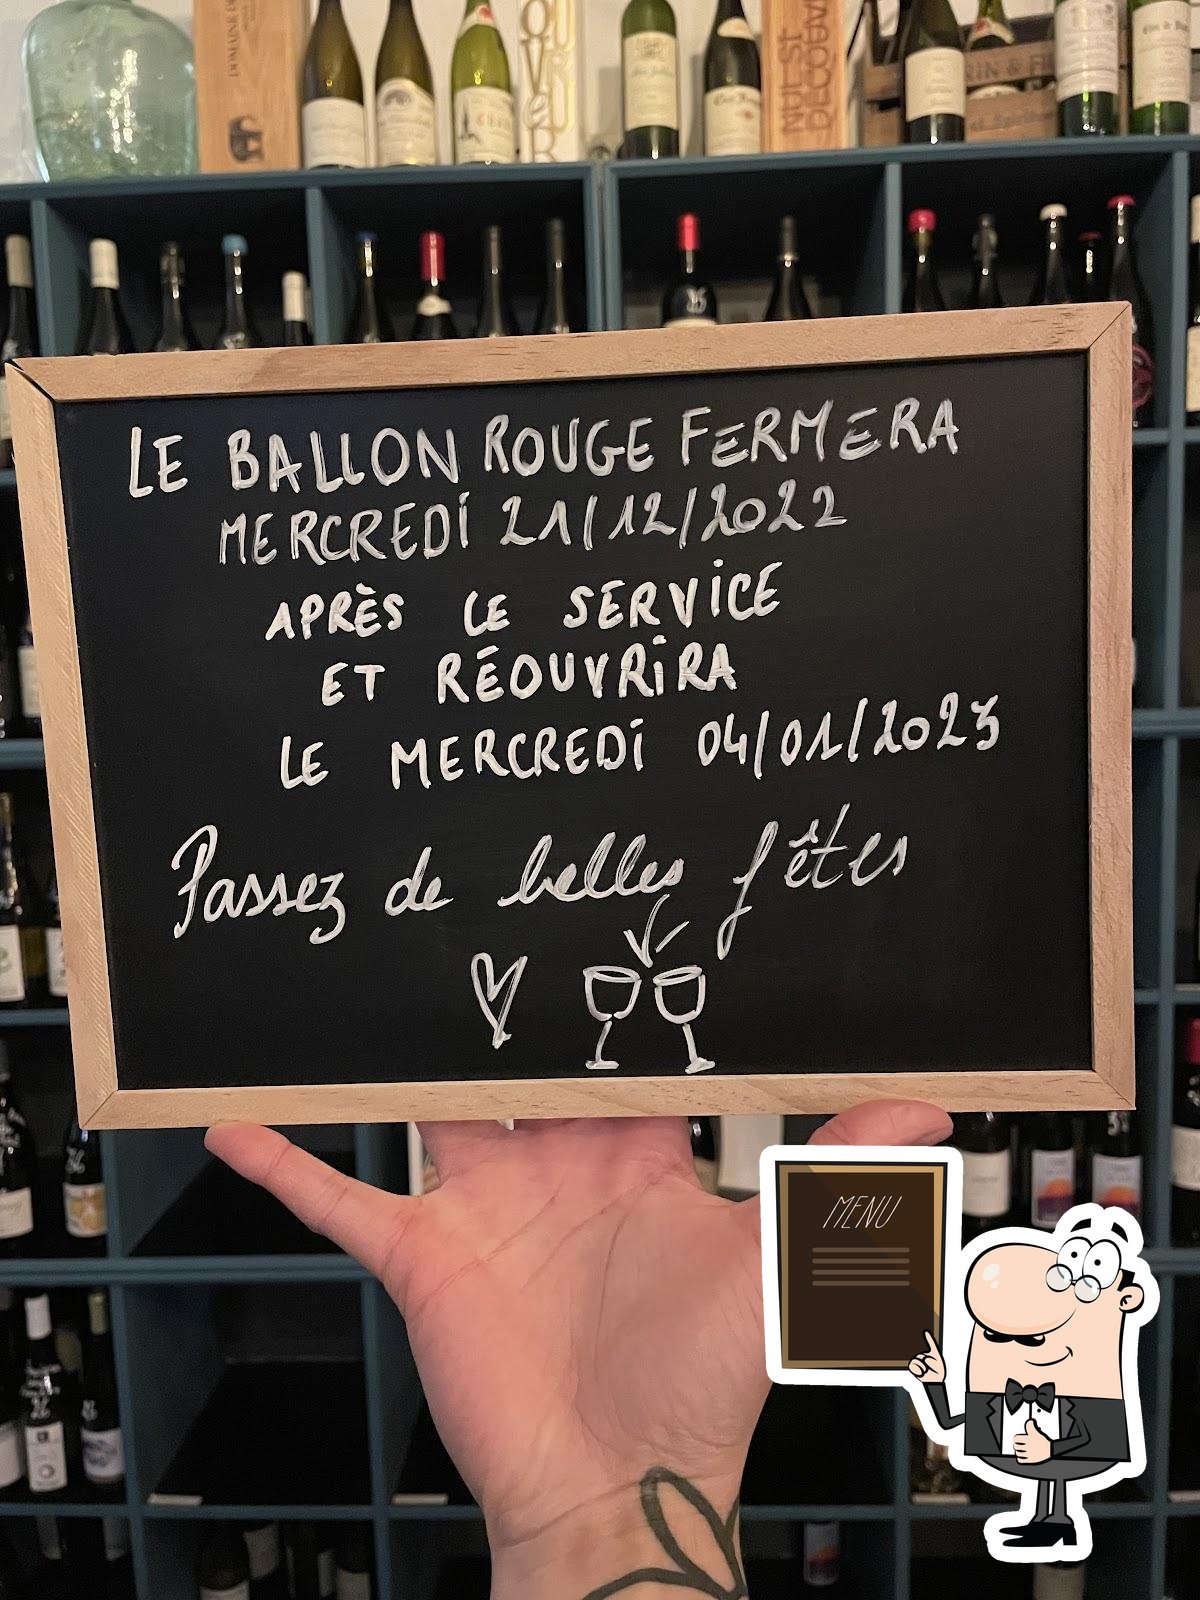 le Ballon Rouge — restaurant